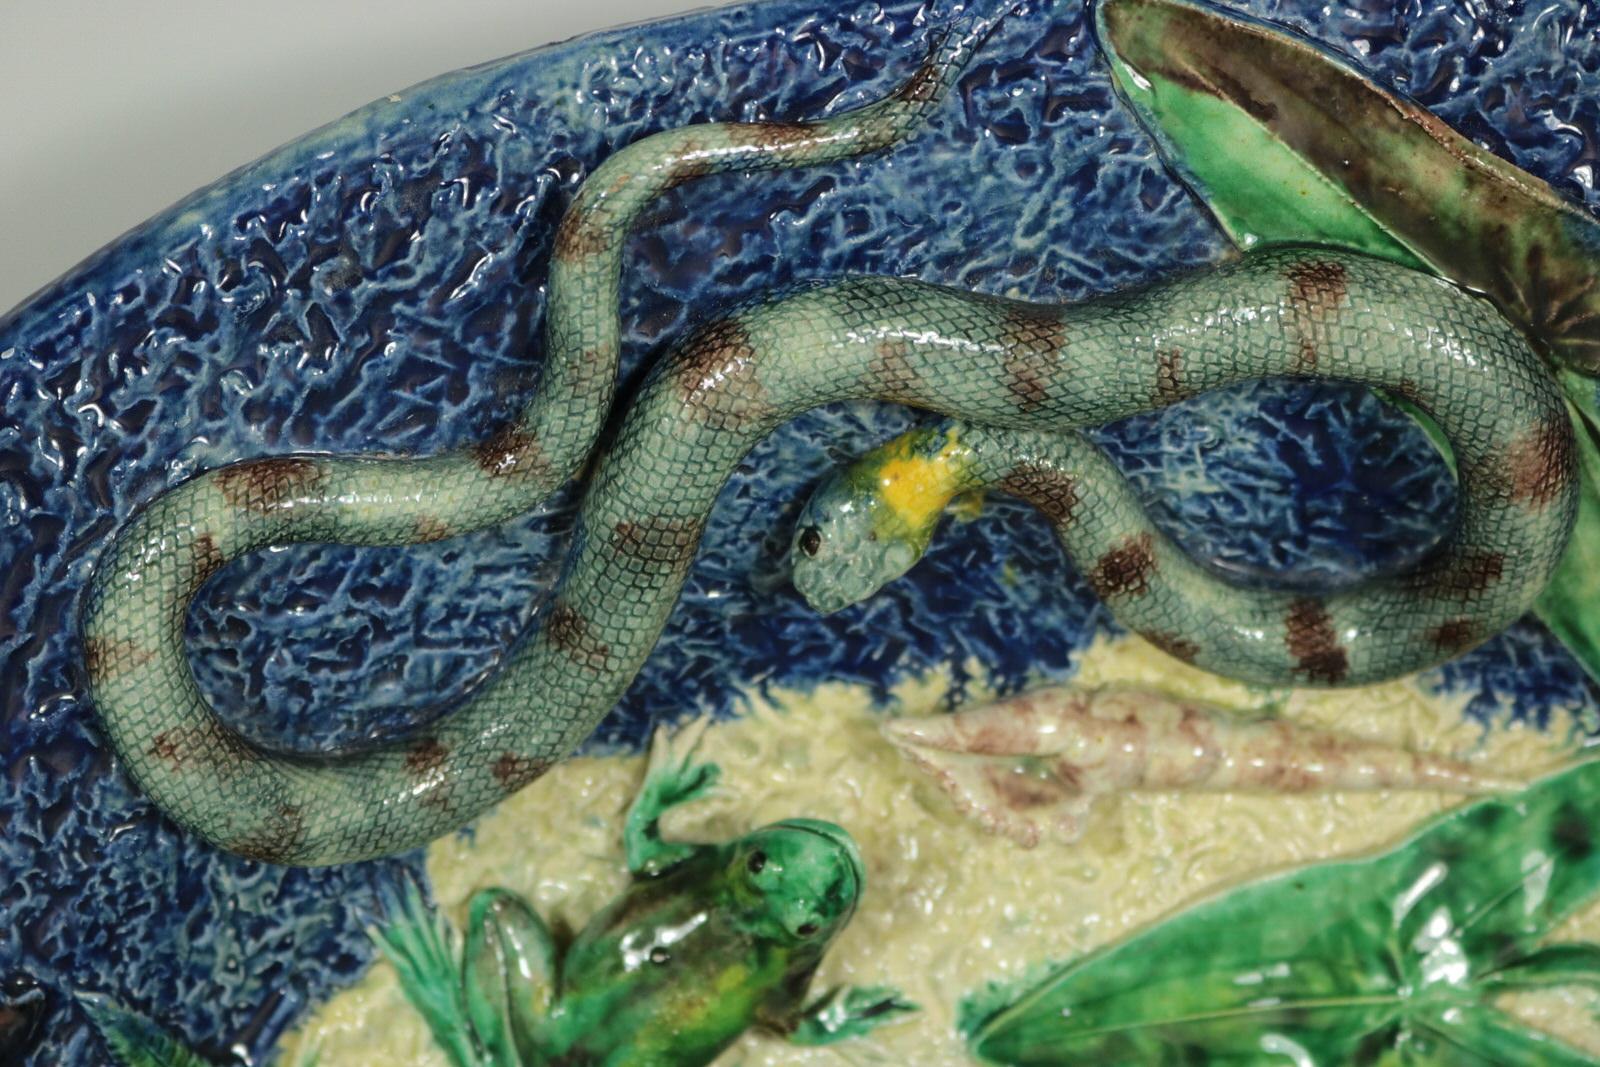 Plat mural Barbizet en majolique de Palissy français qui présente des poissons (dont un brochet), un serpent, un lézard, une grenouille, une tortue, des insectes, des coquillages, des mûres et des feuilles. Coloration : bleu, vert, crème, sont